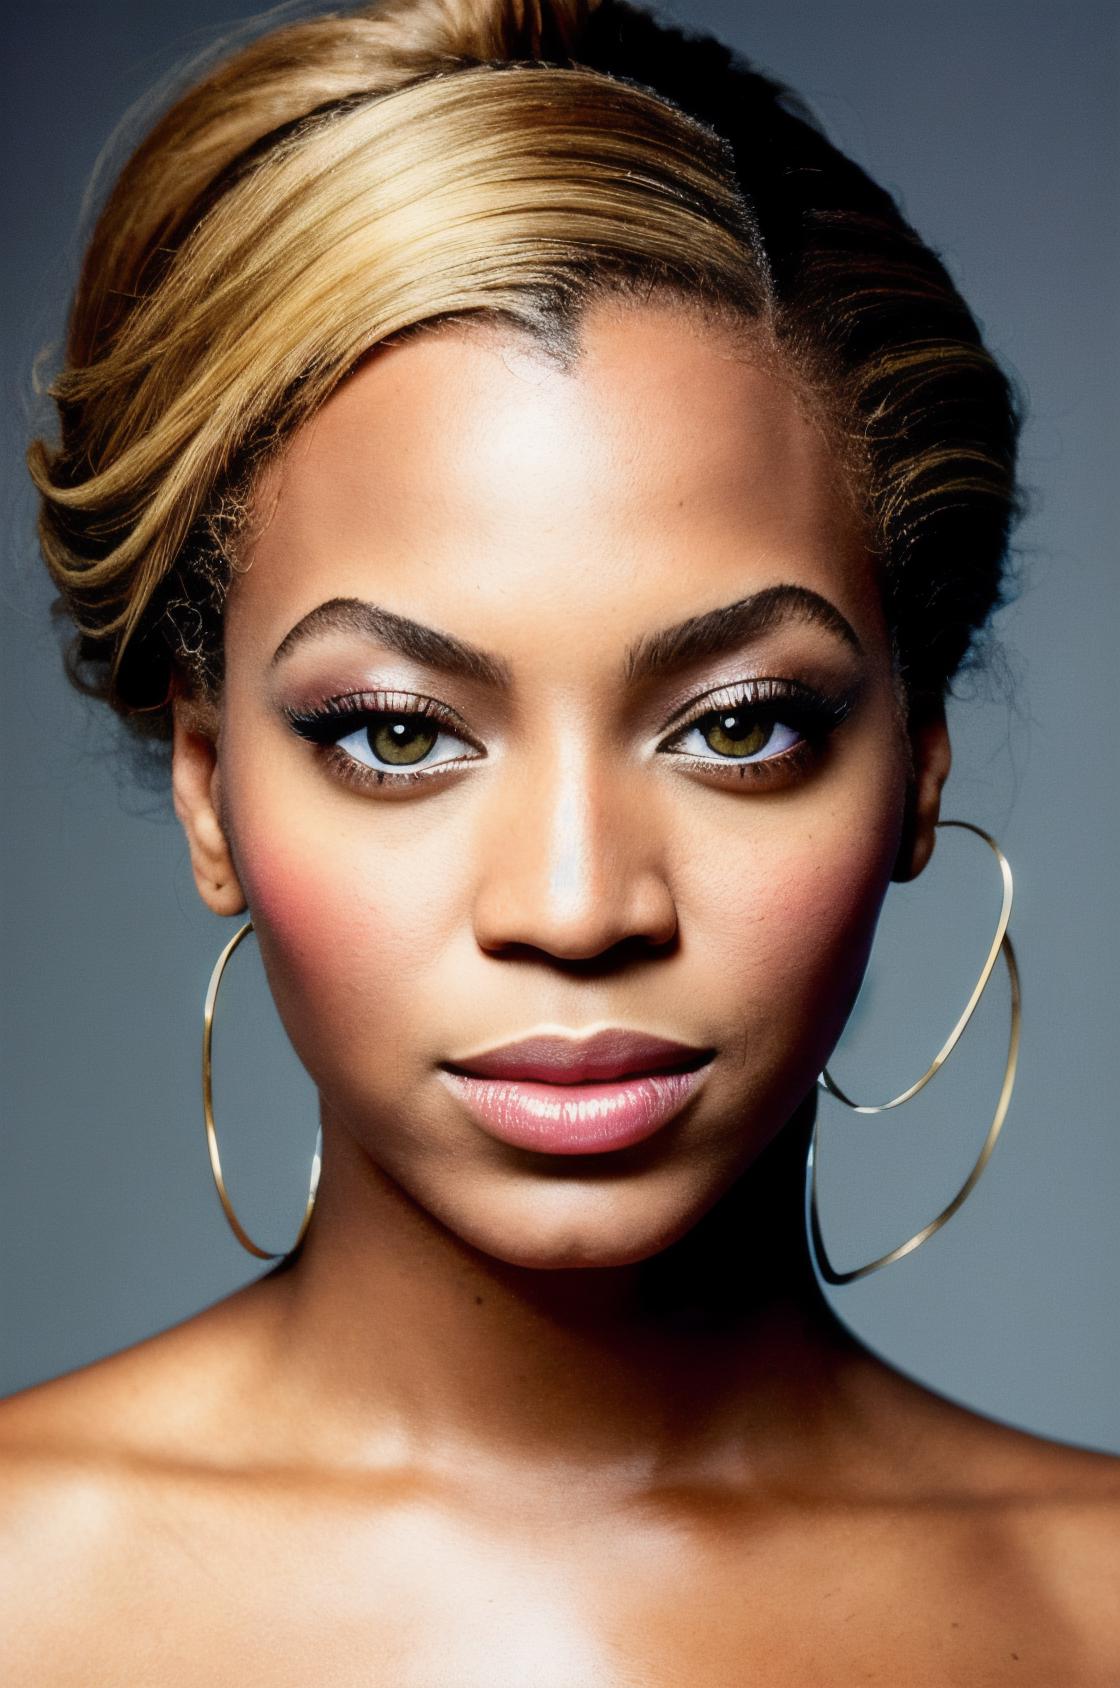 Beyoncé Knowles image by astragartist